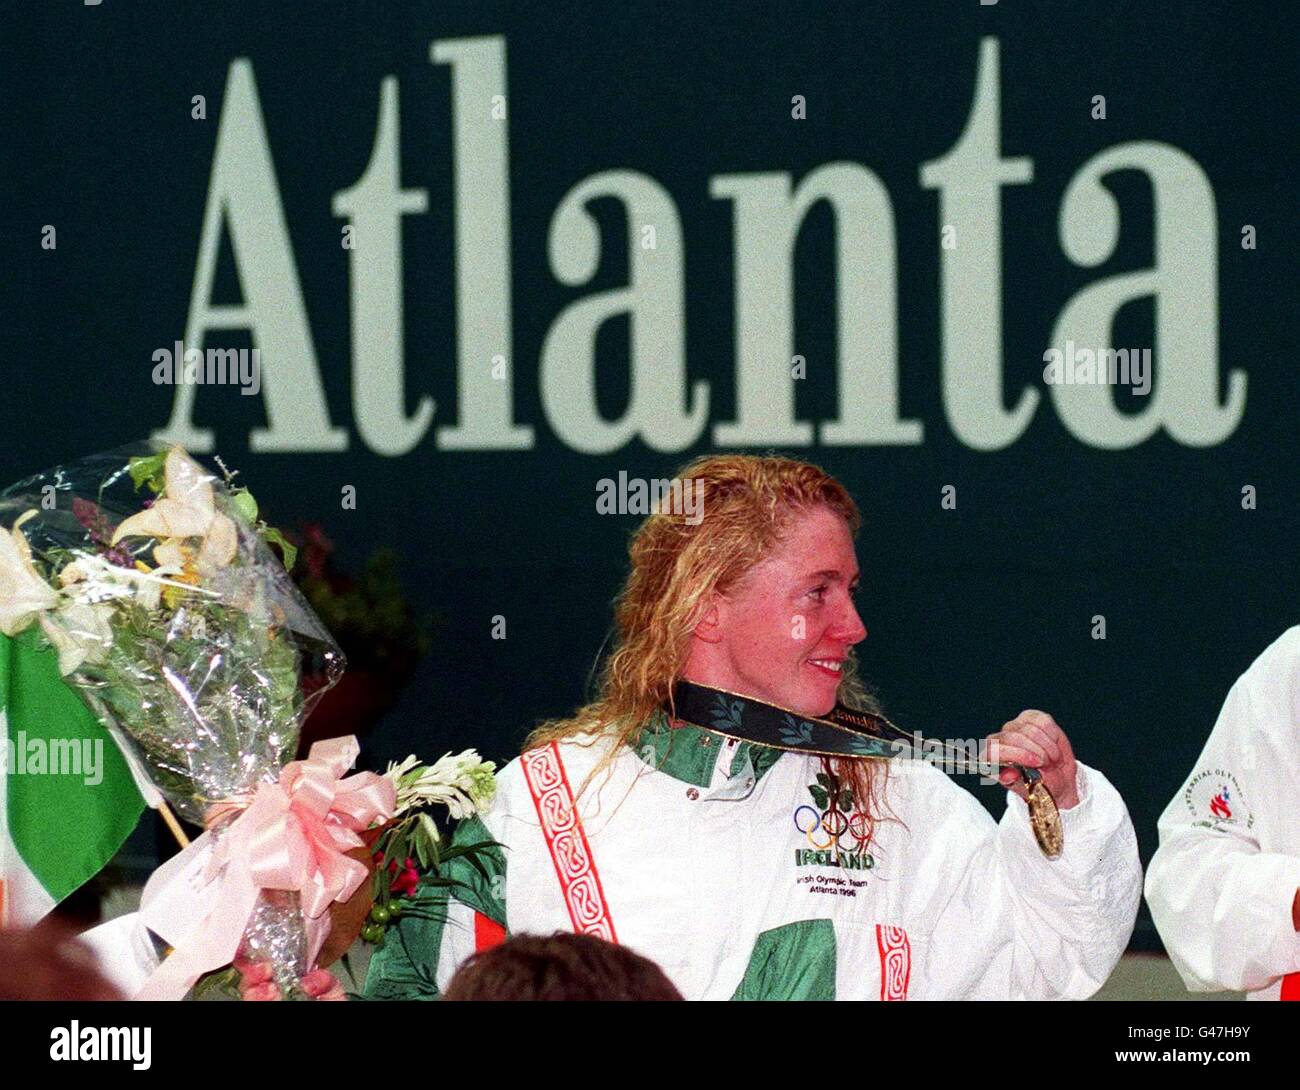 Prendre Atlanta par la tempête....Michelle Smith célèbre à nouveau sur le podium des gagnants ce soir (mercredi) après avoir remporté sa troisième médaille d'or des Jeux Olympiques du centenaire.Smith, en Irlande, a remporté le 100 m de freestyle individuel.Photo de John Giles/PA. Banque D'Images